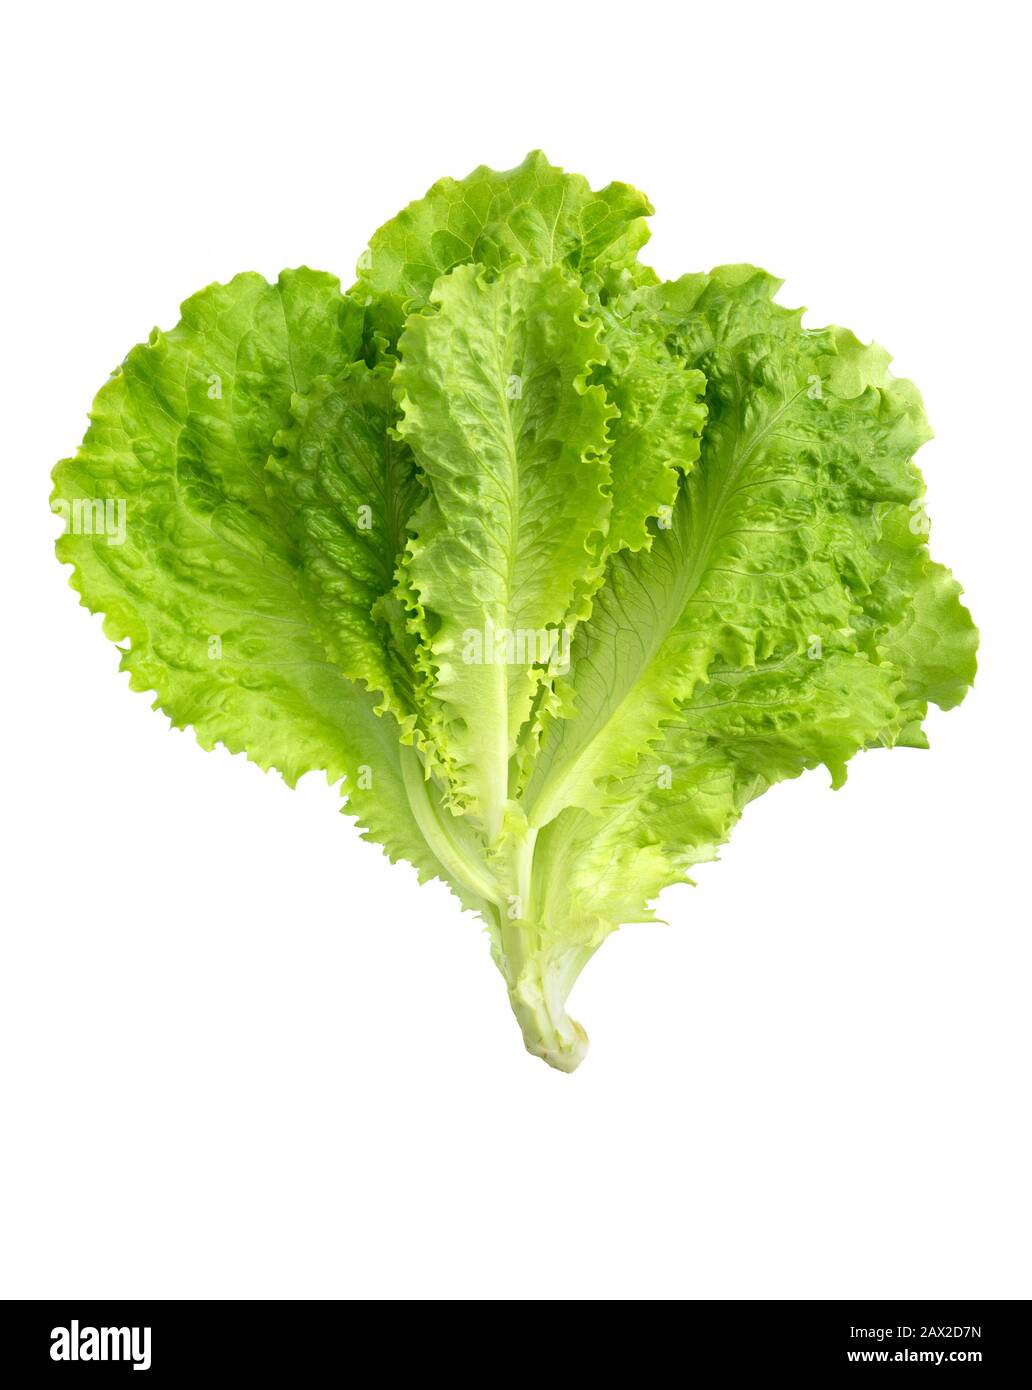 Lettuce fresh. Salad leaf. Lettuce isolated on white background. Fresh green lettuce leaves. Stock Photo